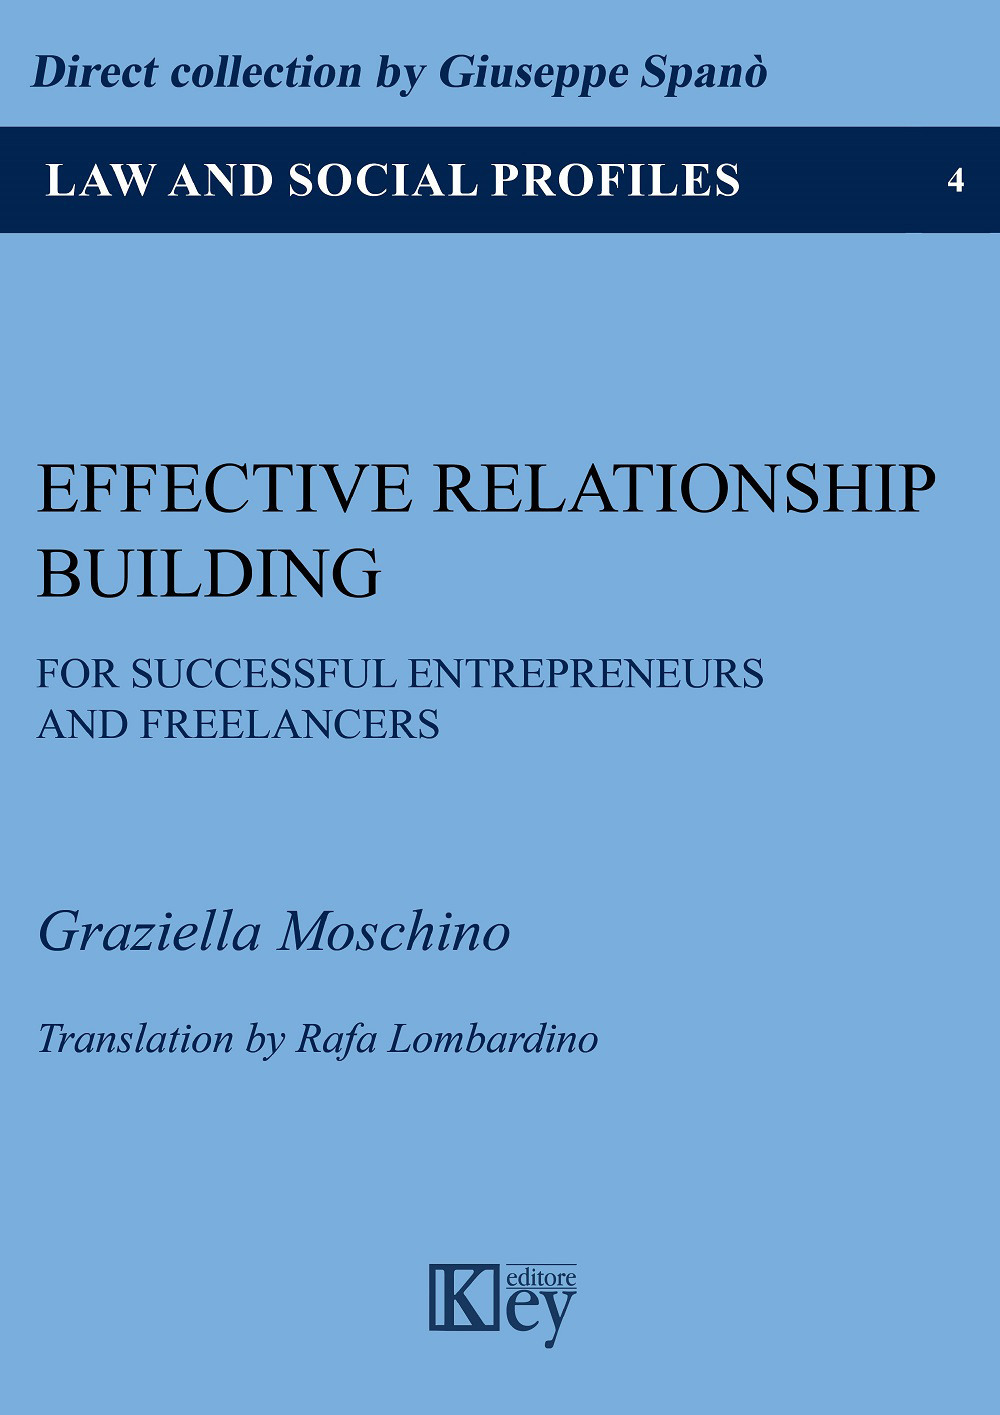 Libri Graziella Moschino - Effective Relationship Building For Successful Entrepreneurs And Freelancers NUOVO SIGILLATO, EDIZIONE DEL 18/05/2020 SUBITO DISPONIBILE